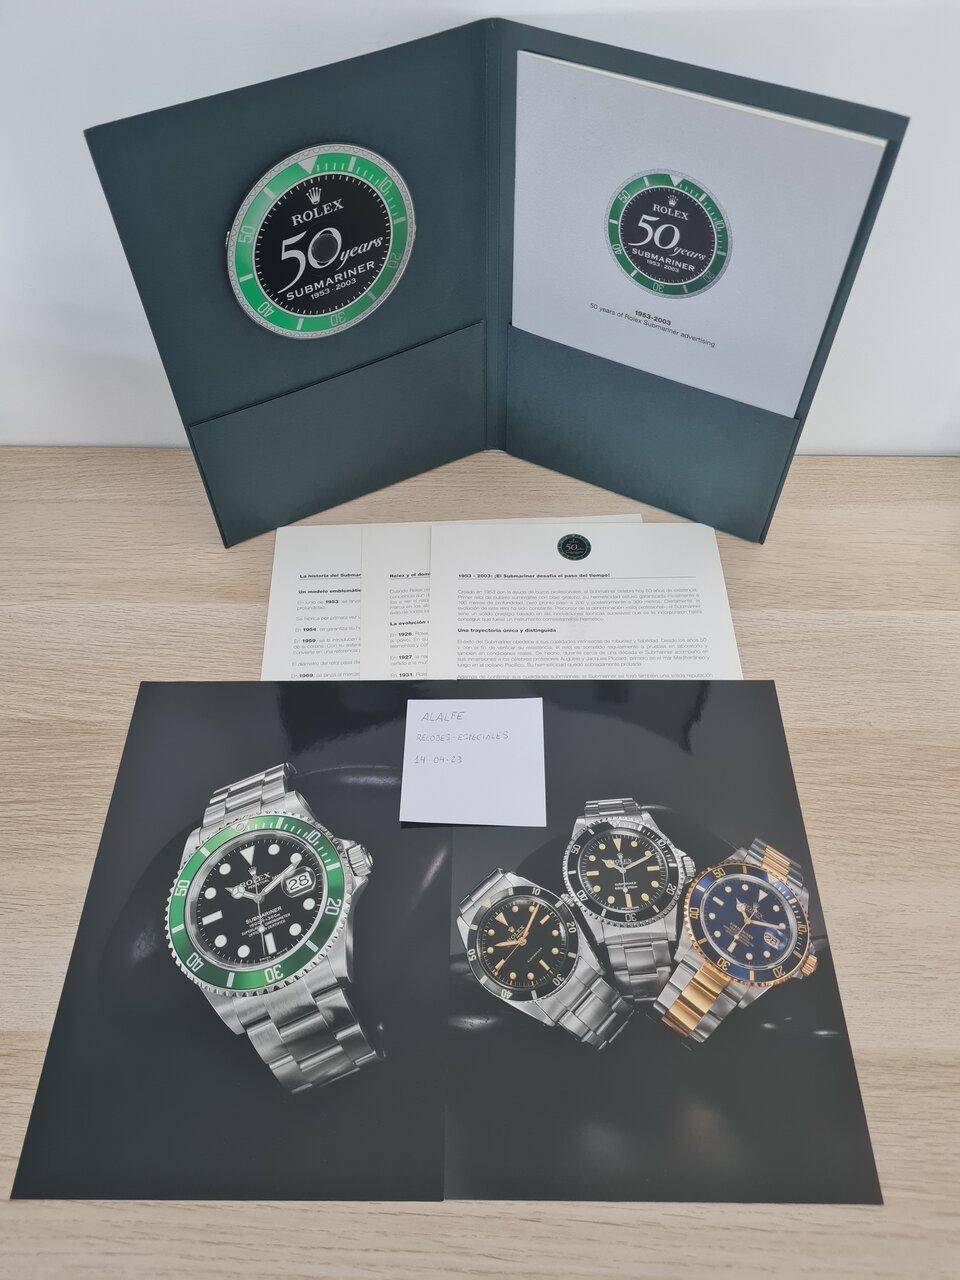 Rolex Submariner 50 Aniversario Catálogo Manual y CD | Relojes Especiales,  EL foro de relojes